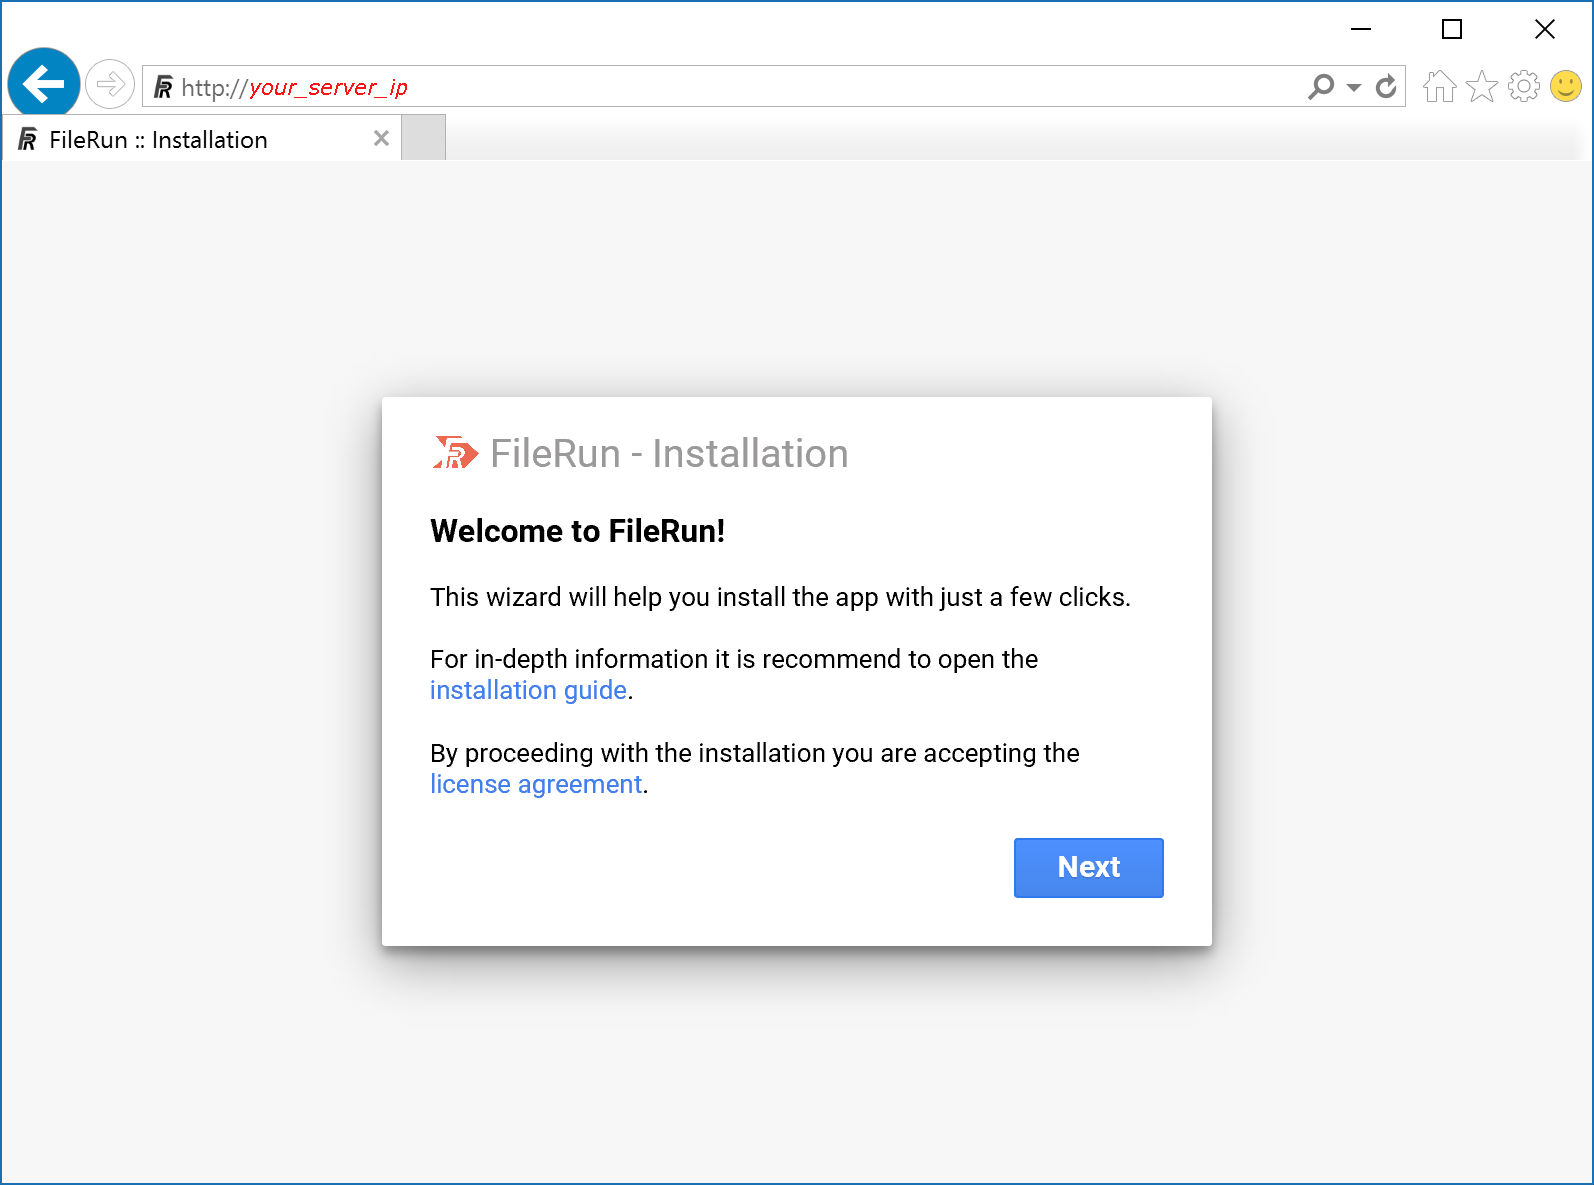 FileRun installer welcome screen